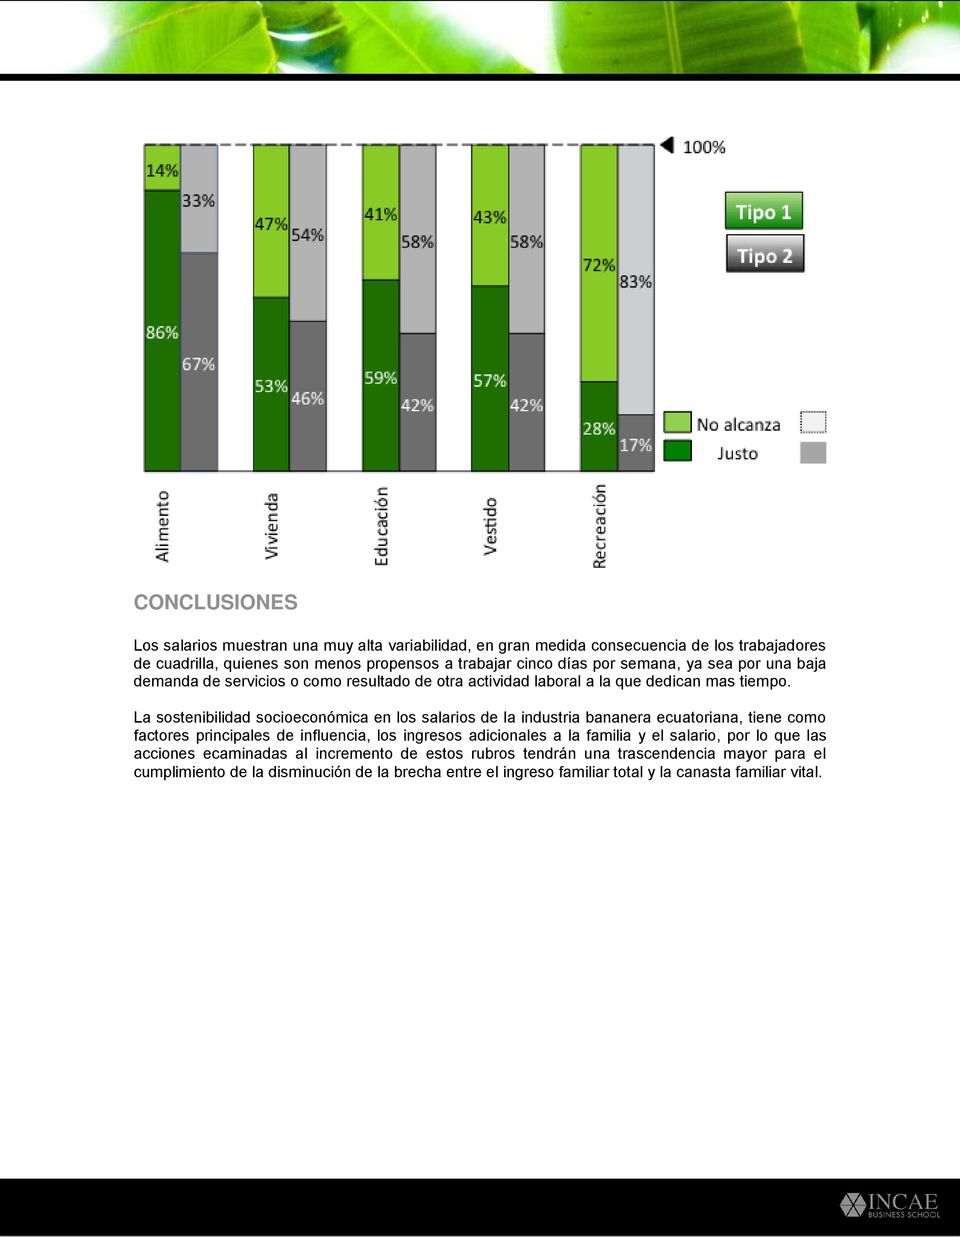 La sostenibilidad socioeconómica en los salarios de la industria bananera ecuatoriana, tiene como factores principales de influencia, los ingresos adicionales a la familia y